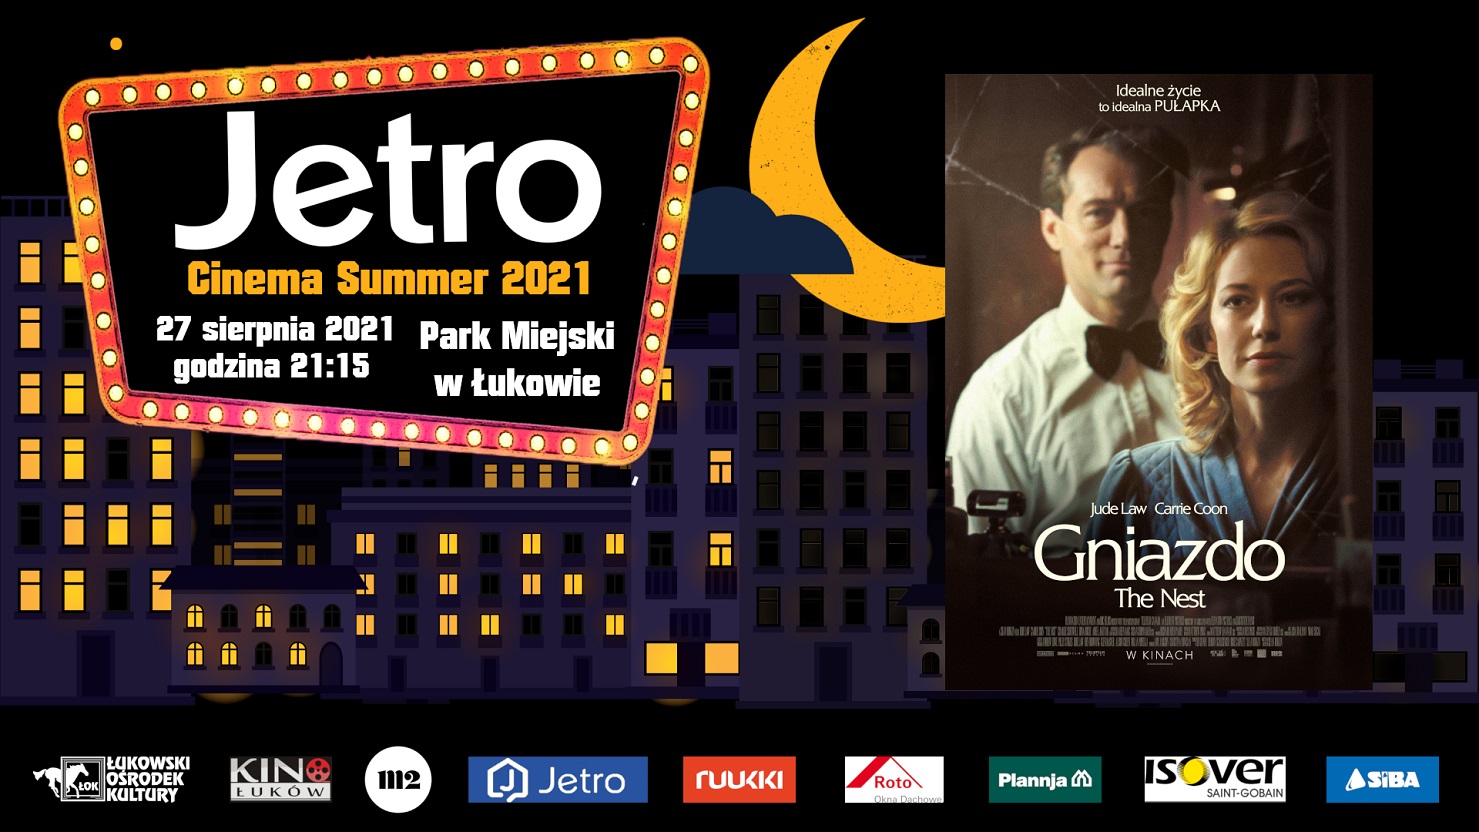 Jetro Cinema Summer 2021. Zaproszenie na film „Gniazdo”